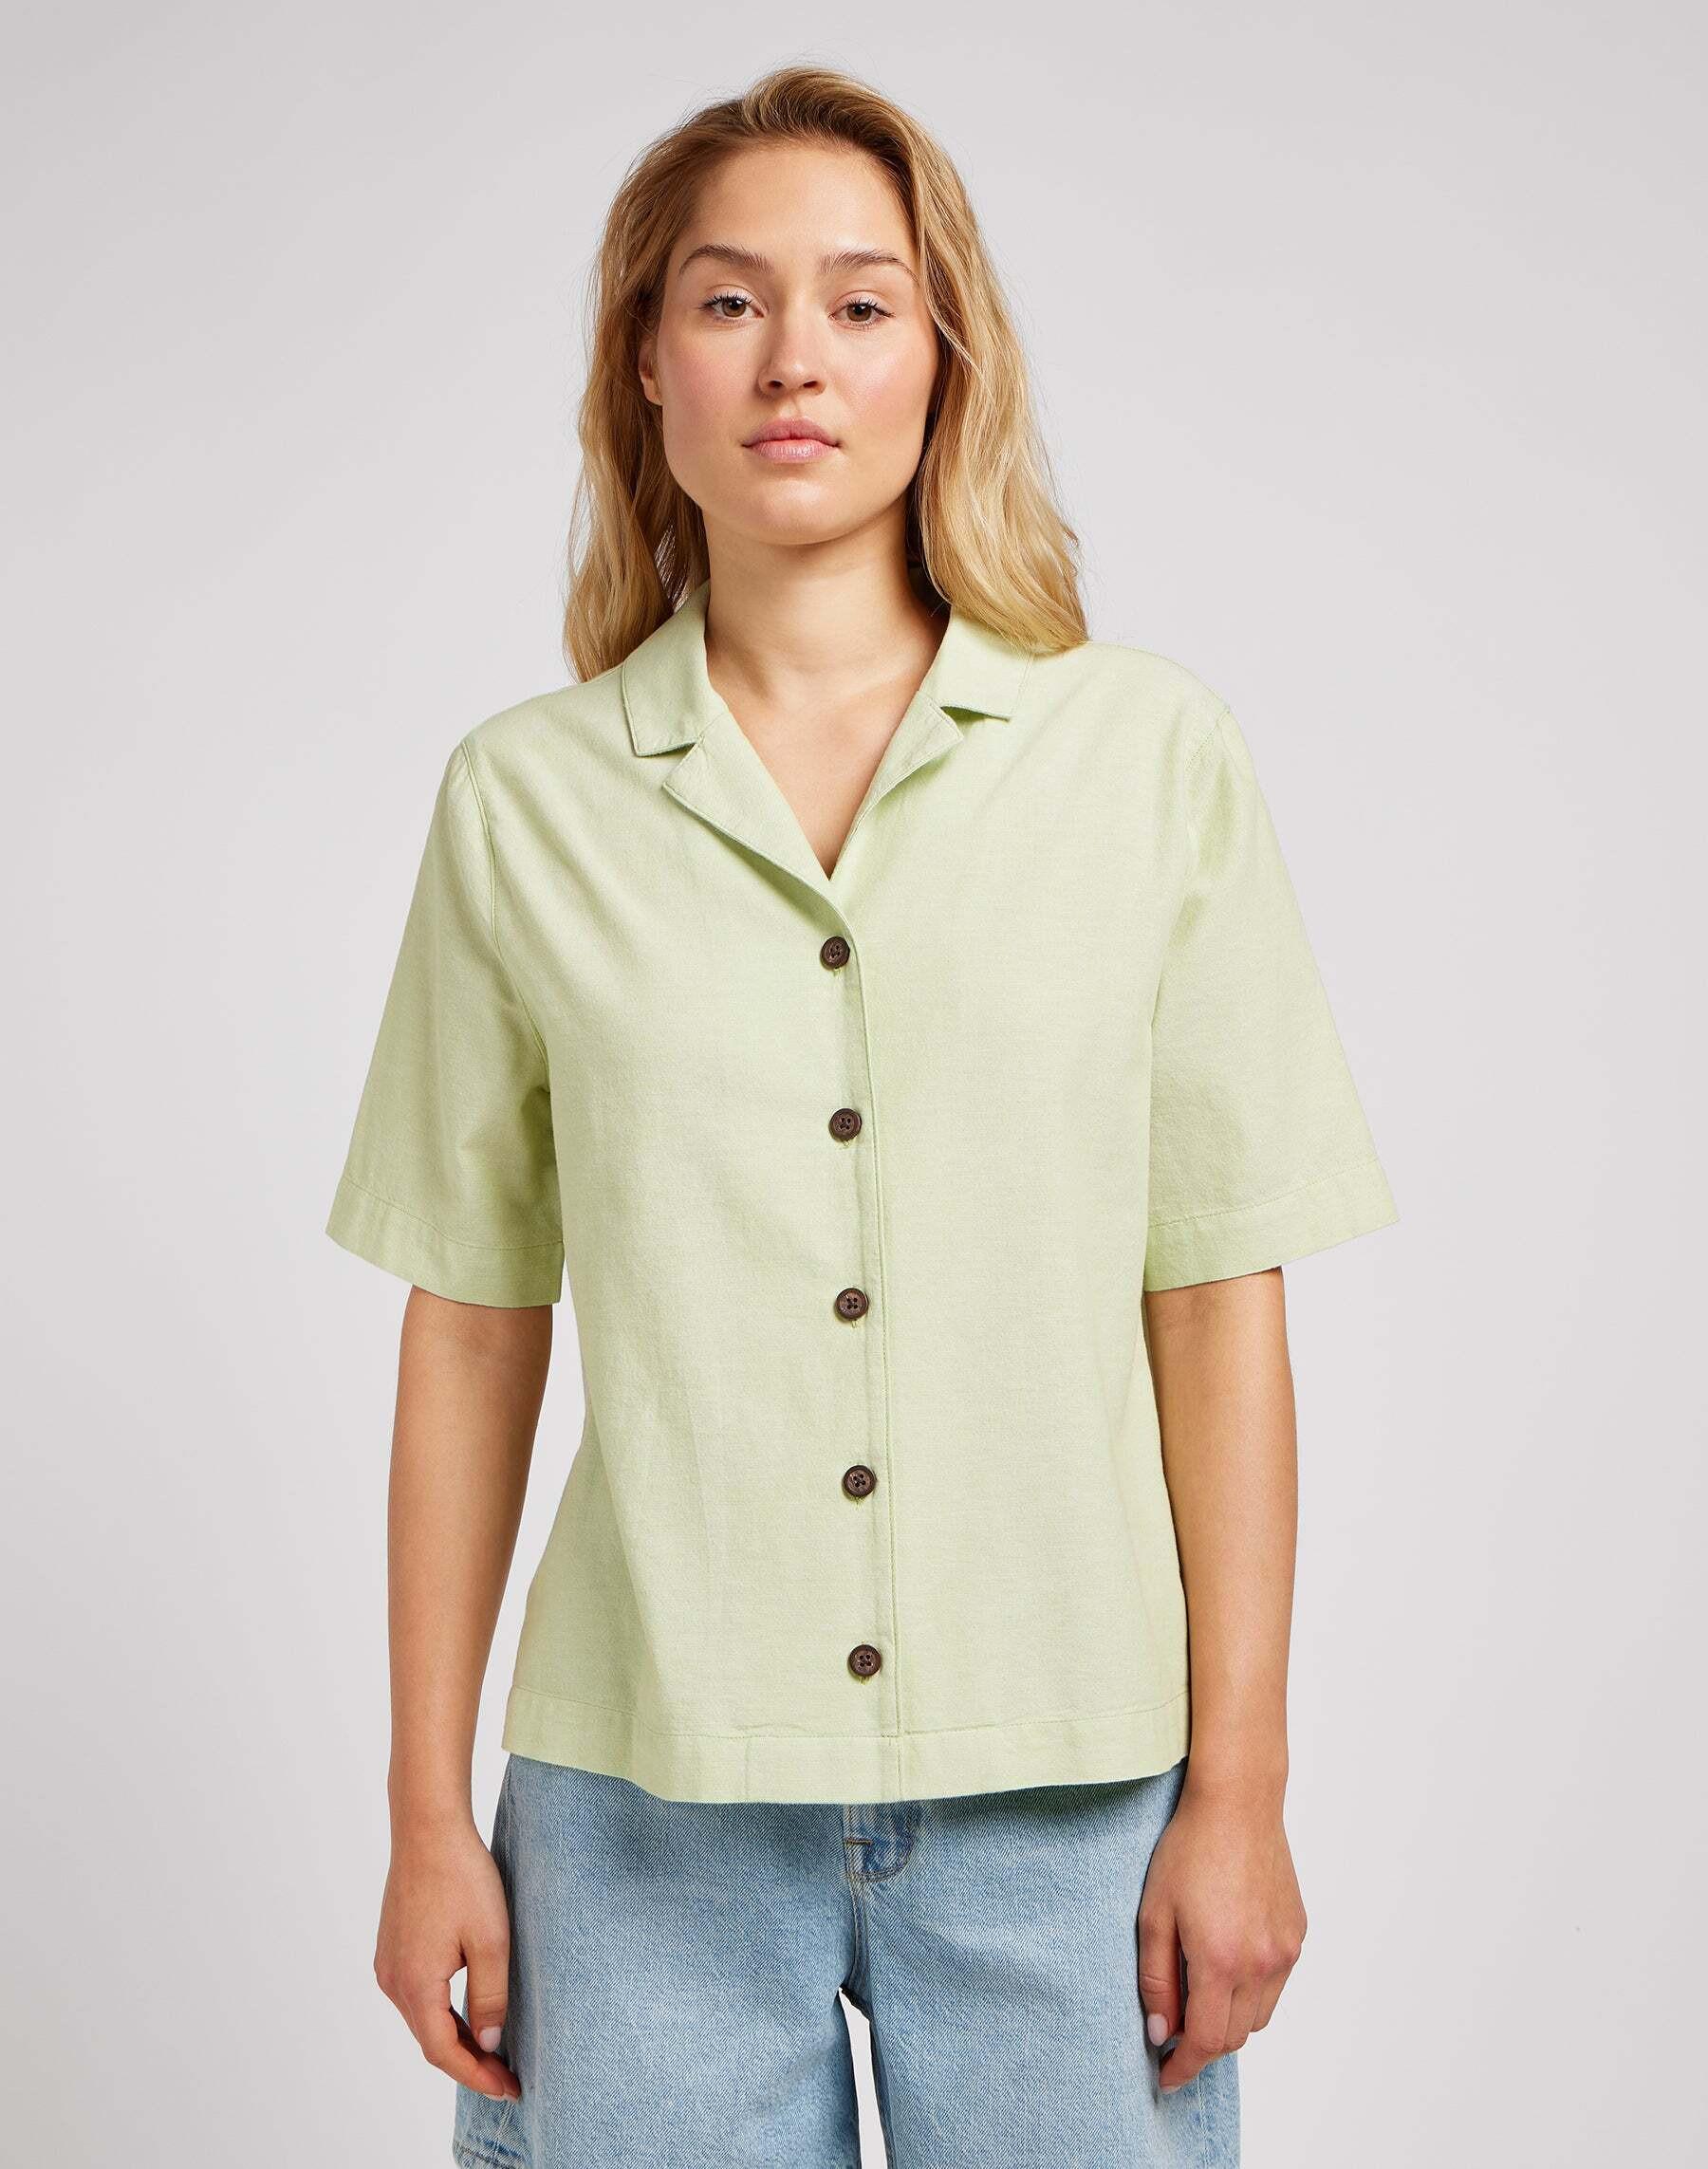 Hemden Camp Shirt Damen Hellgrün S von Lee